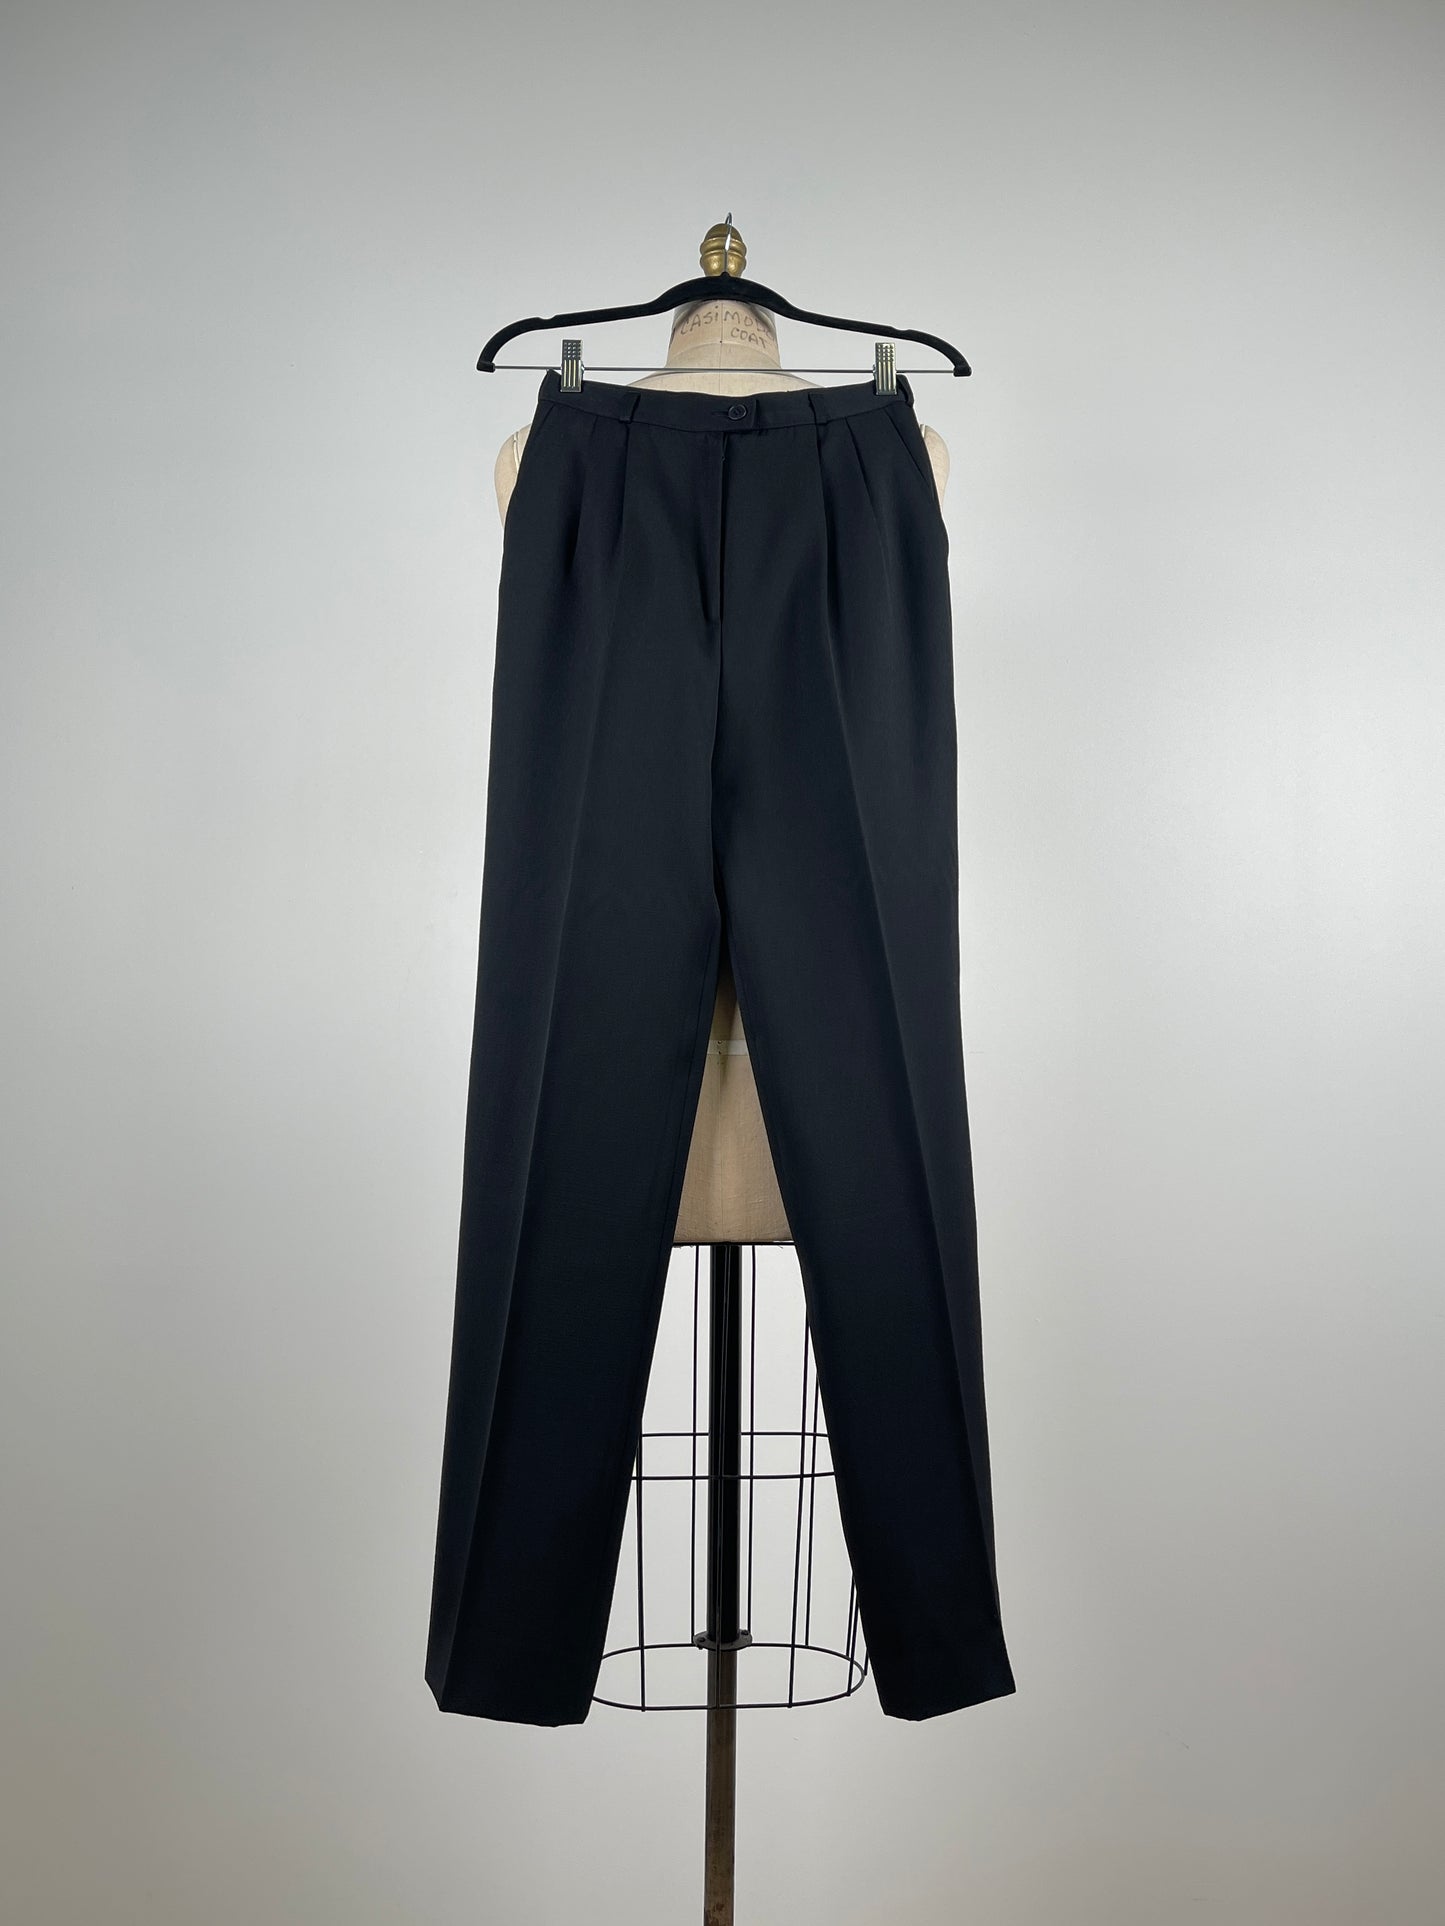 Pantalon noir à pinces en pure laine vierge (XS)